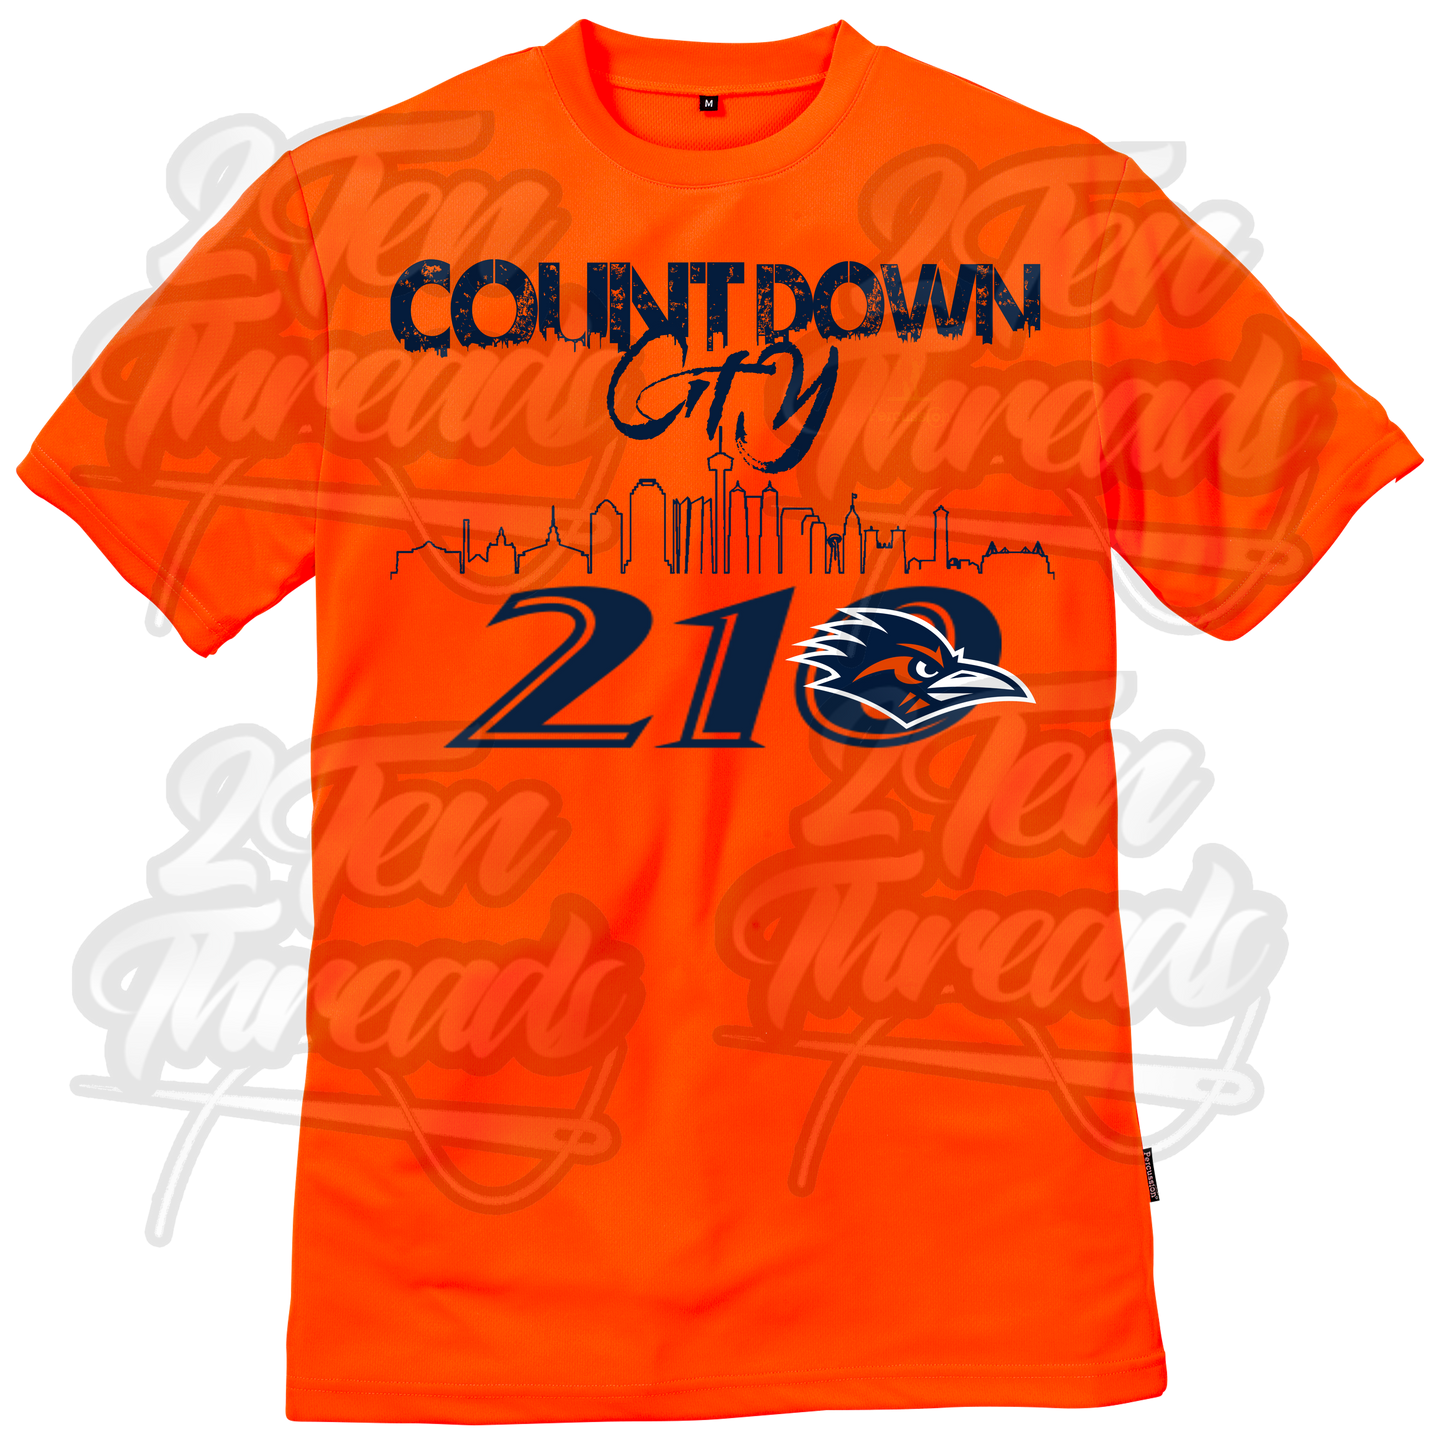 CountDown City UTSA Shirt!